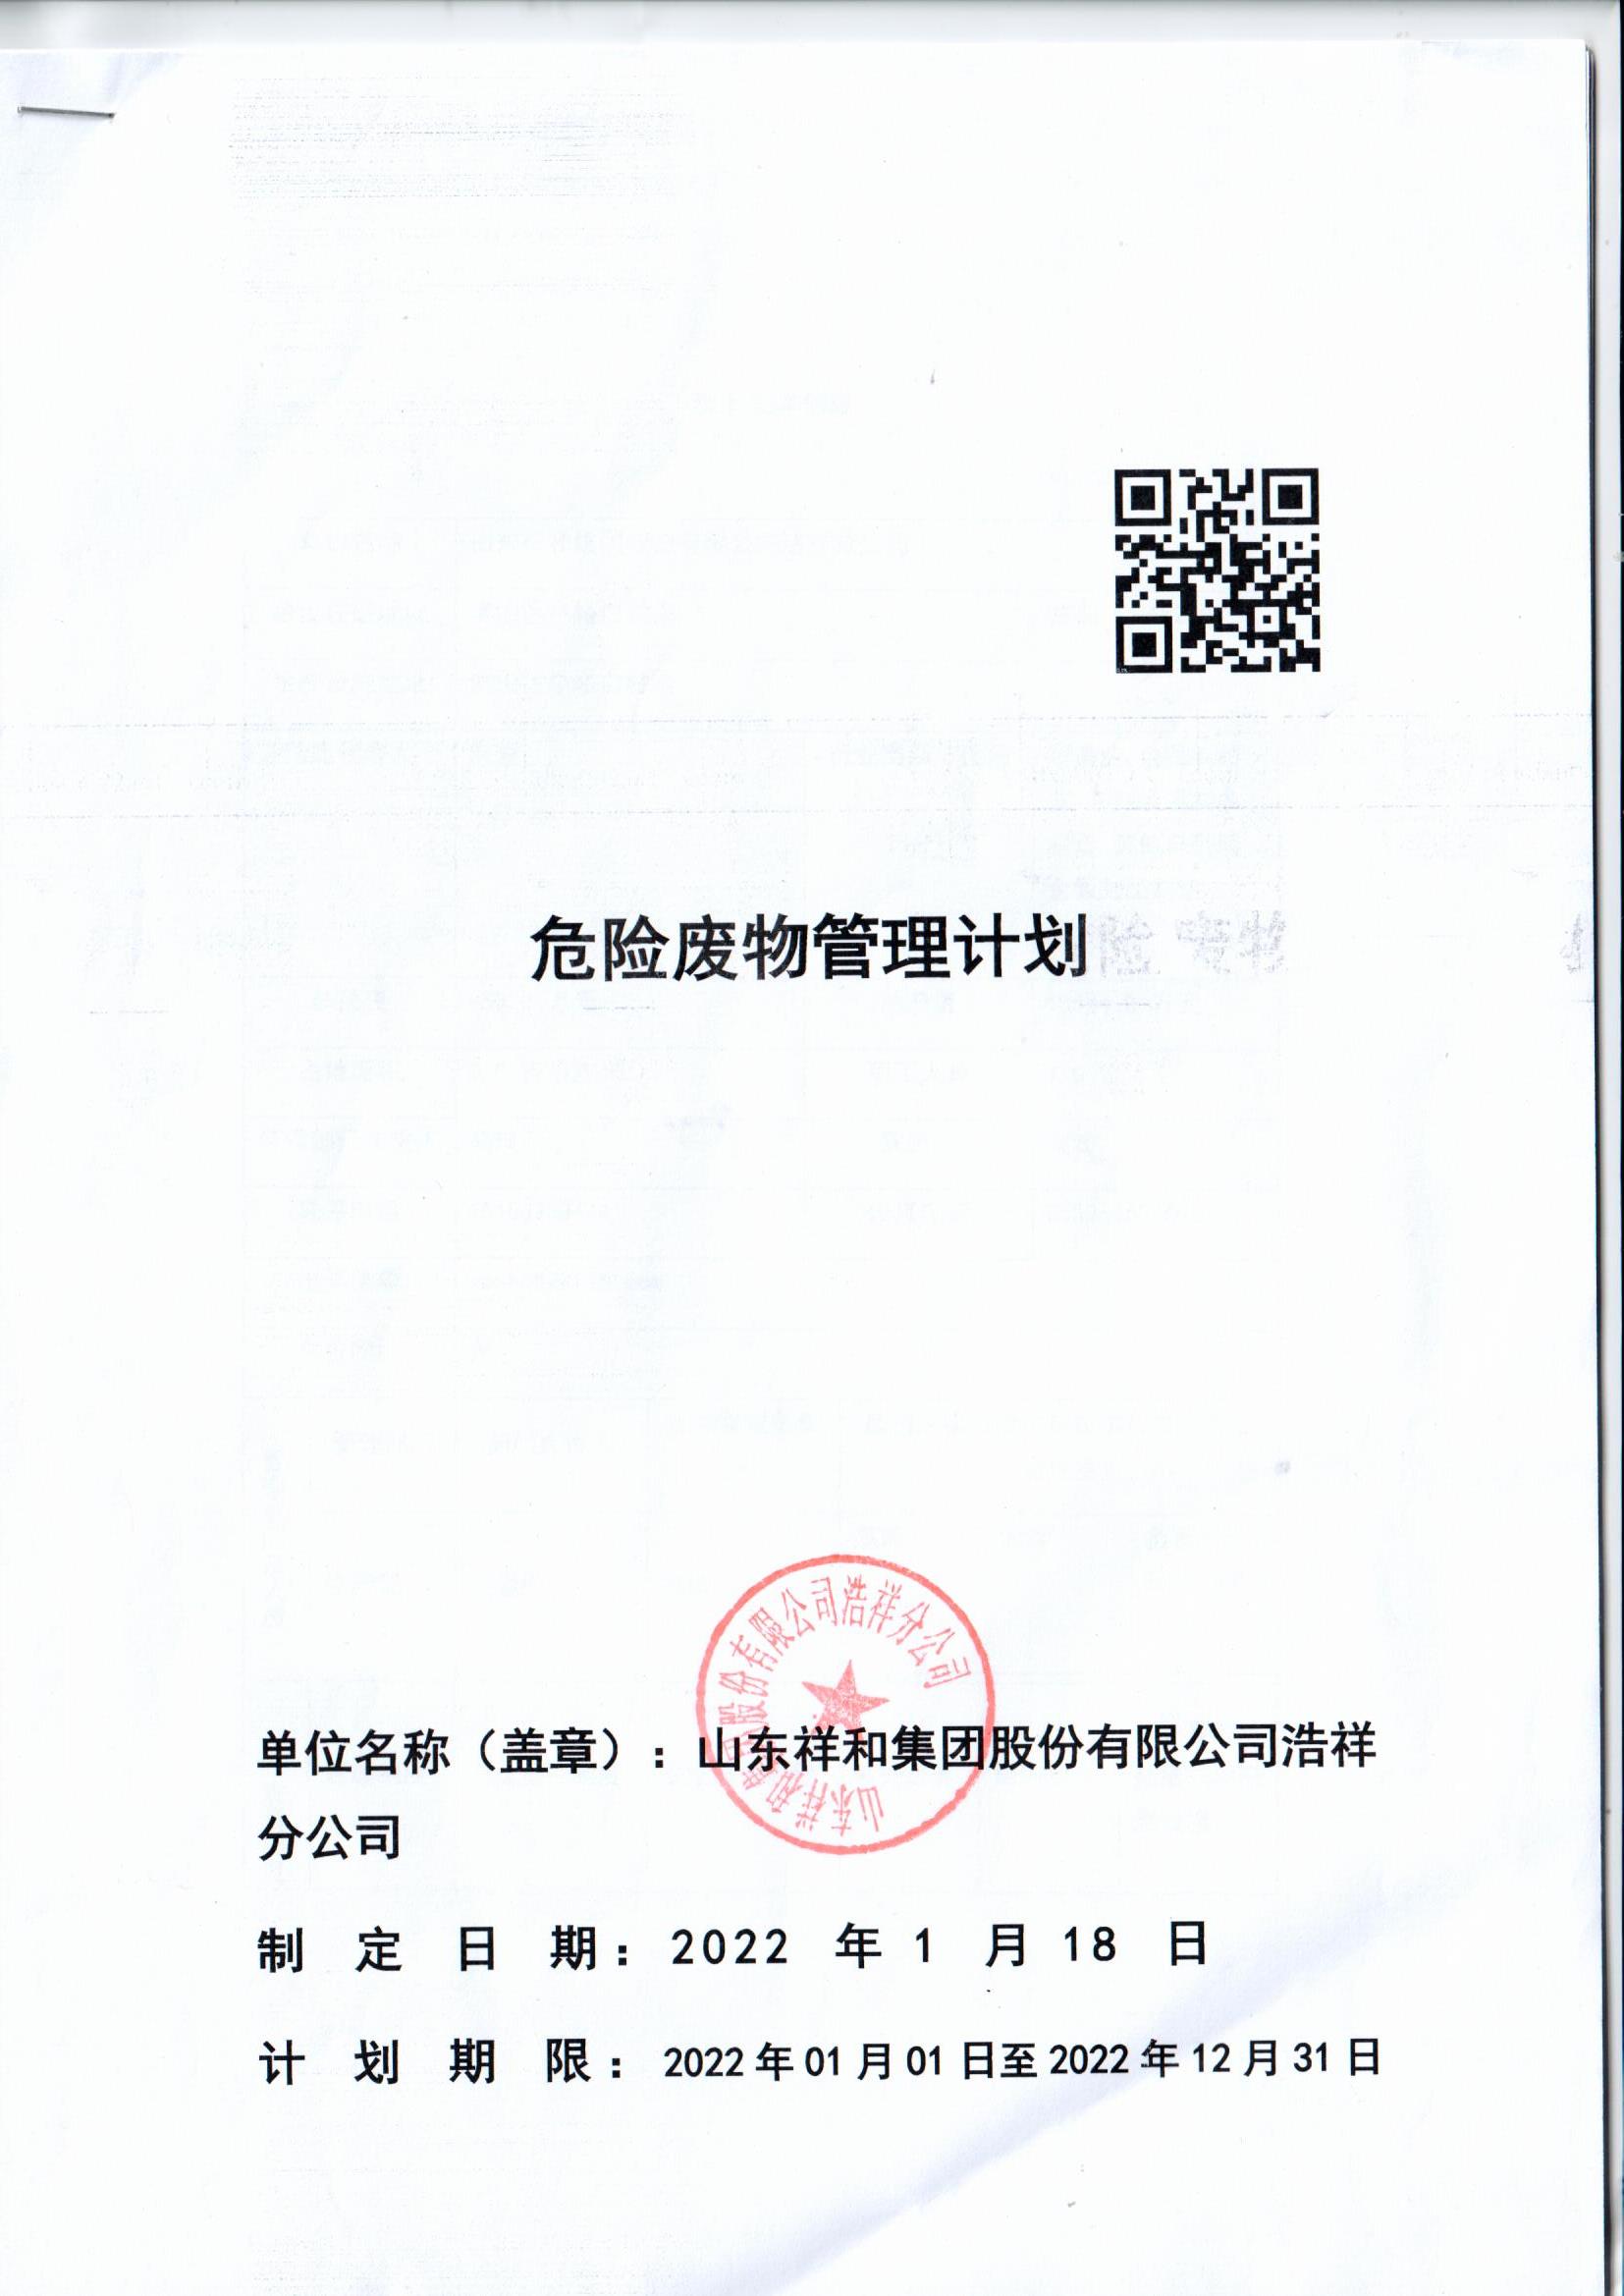 ror官方(中国)有限公司官网浩祥分公司2022年度危险废物管理信息公开